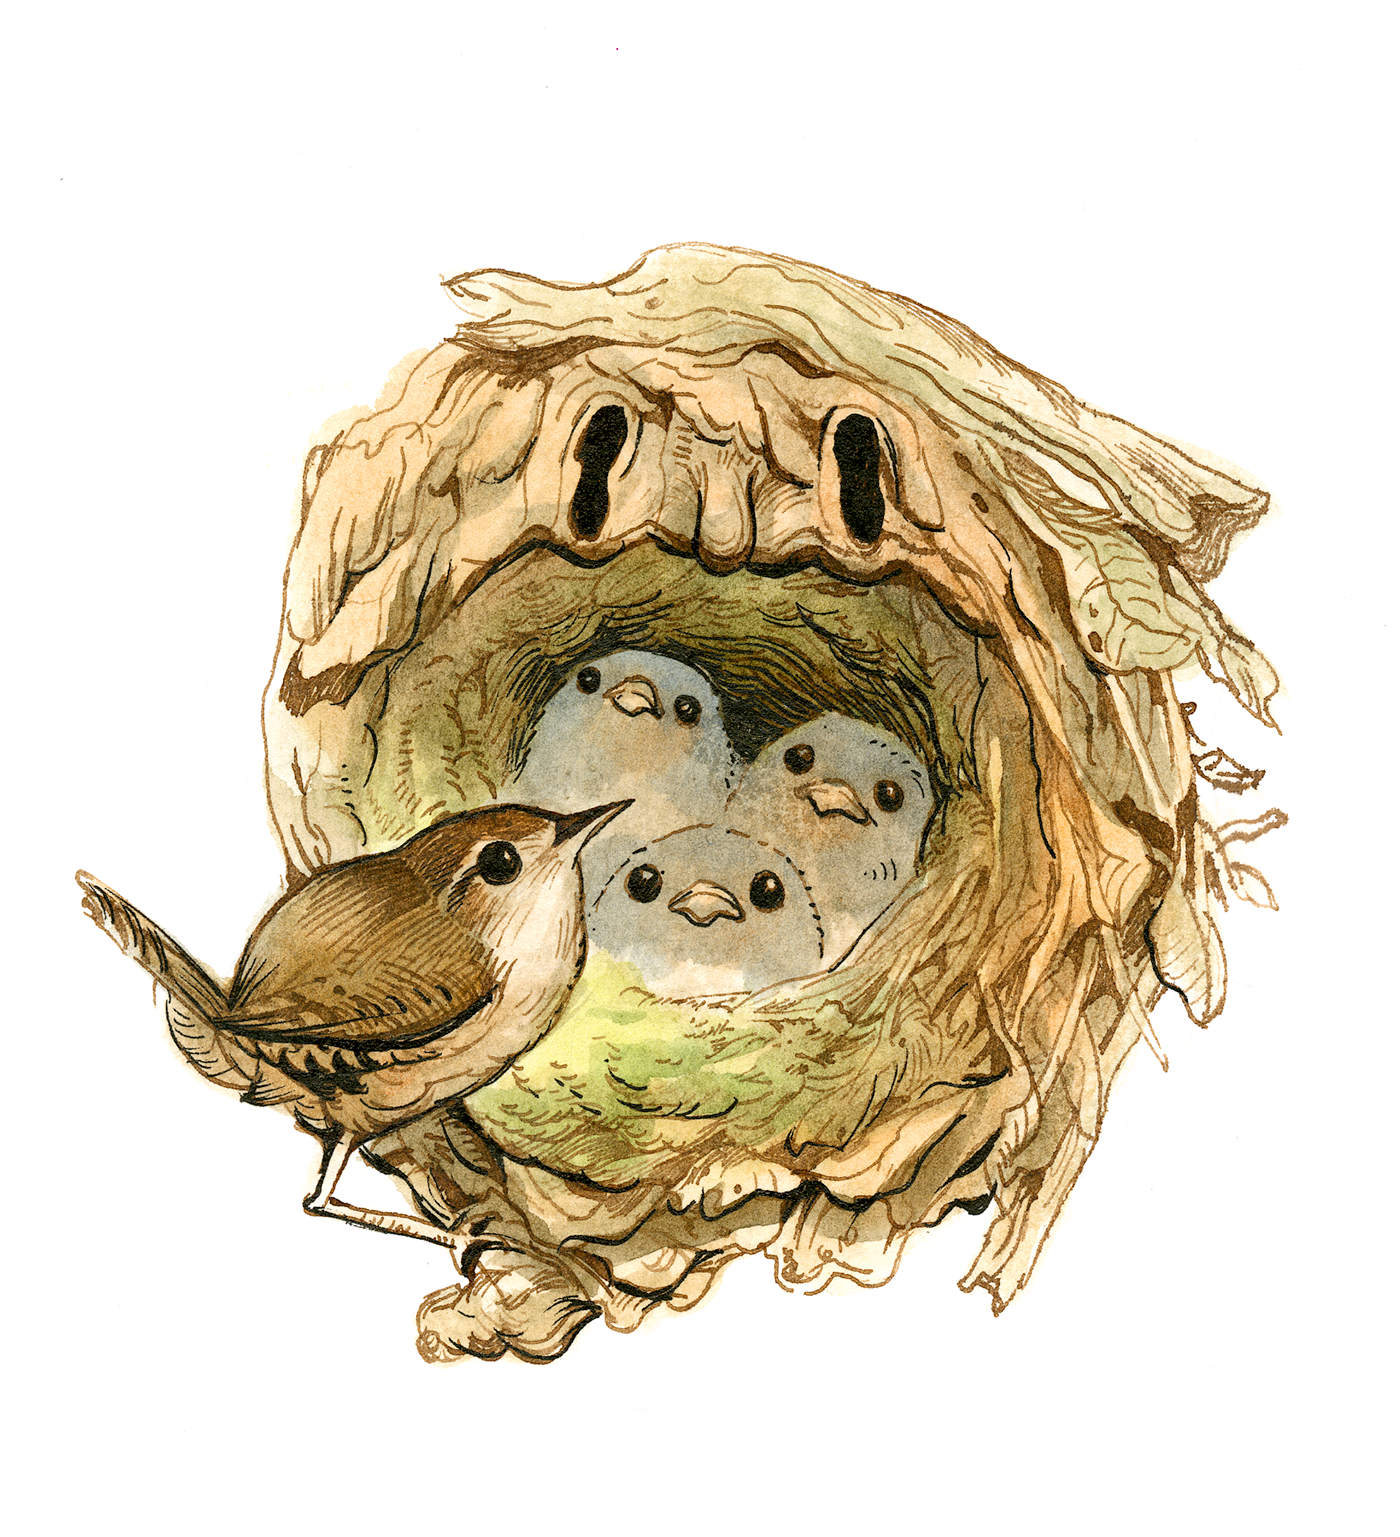 Nature ILLUSTRATION  watercolor ink bird cavity nest cartoon jbass julie Benbassat